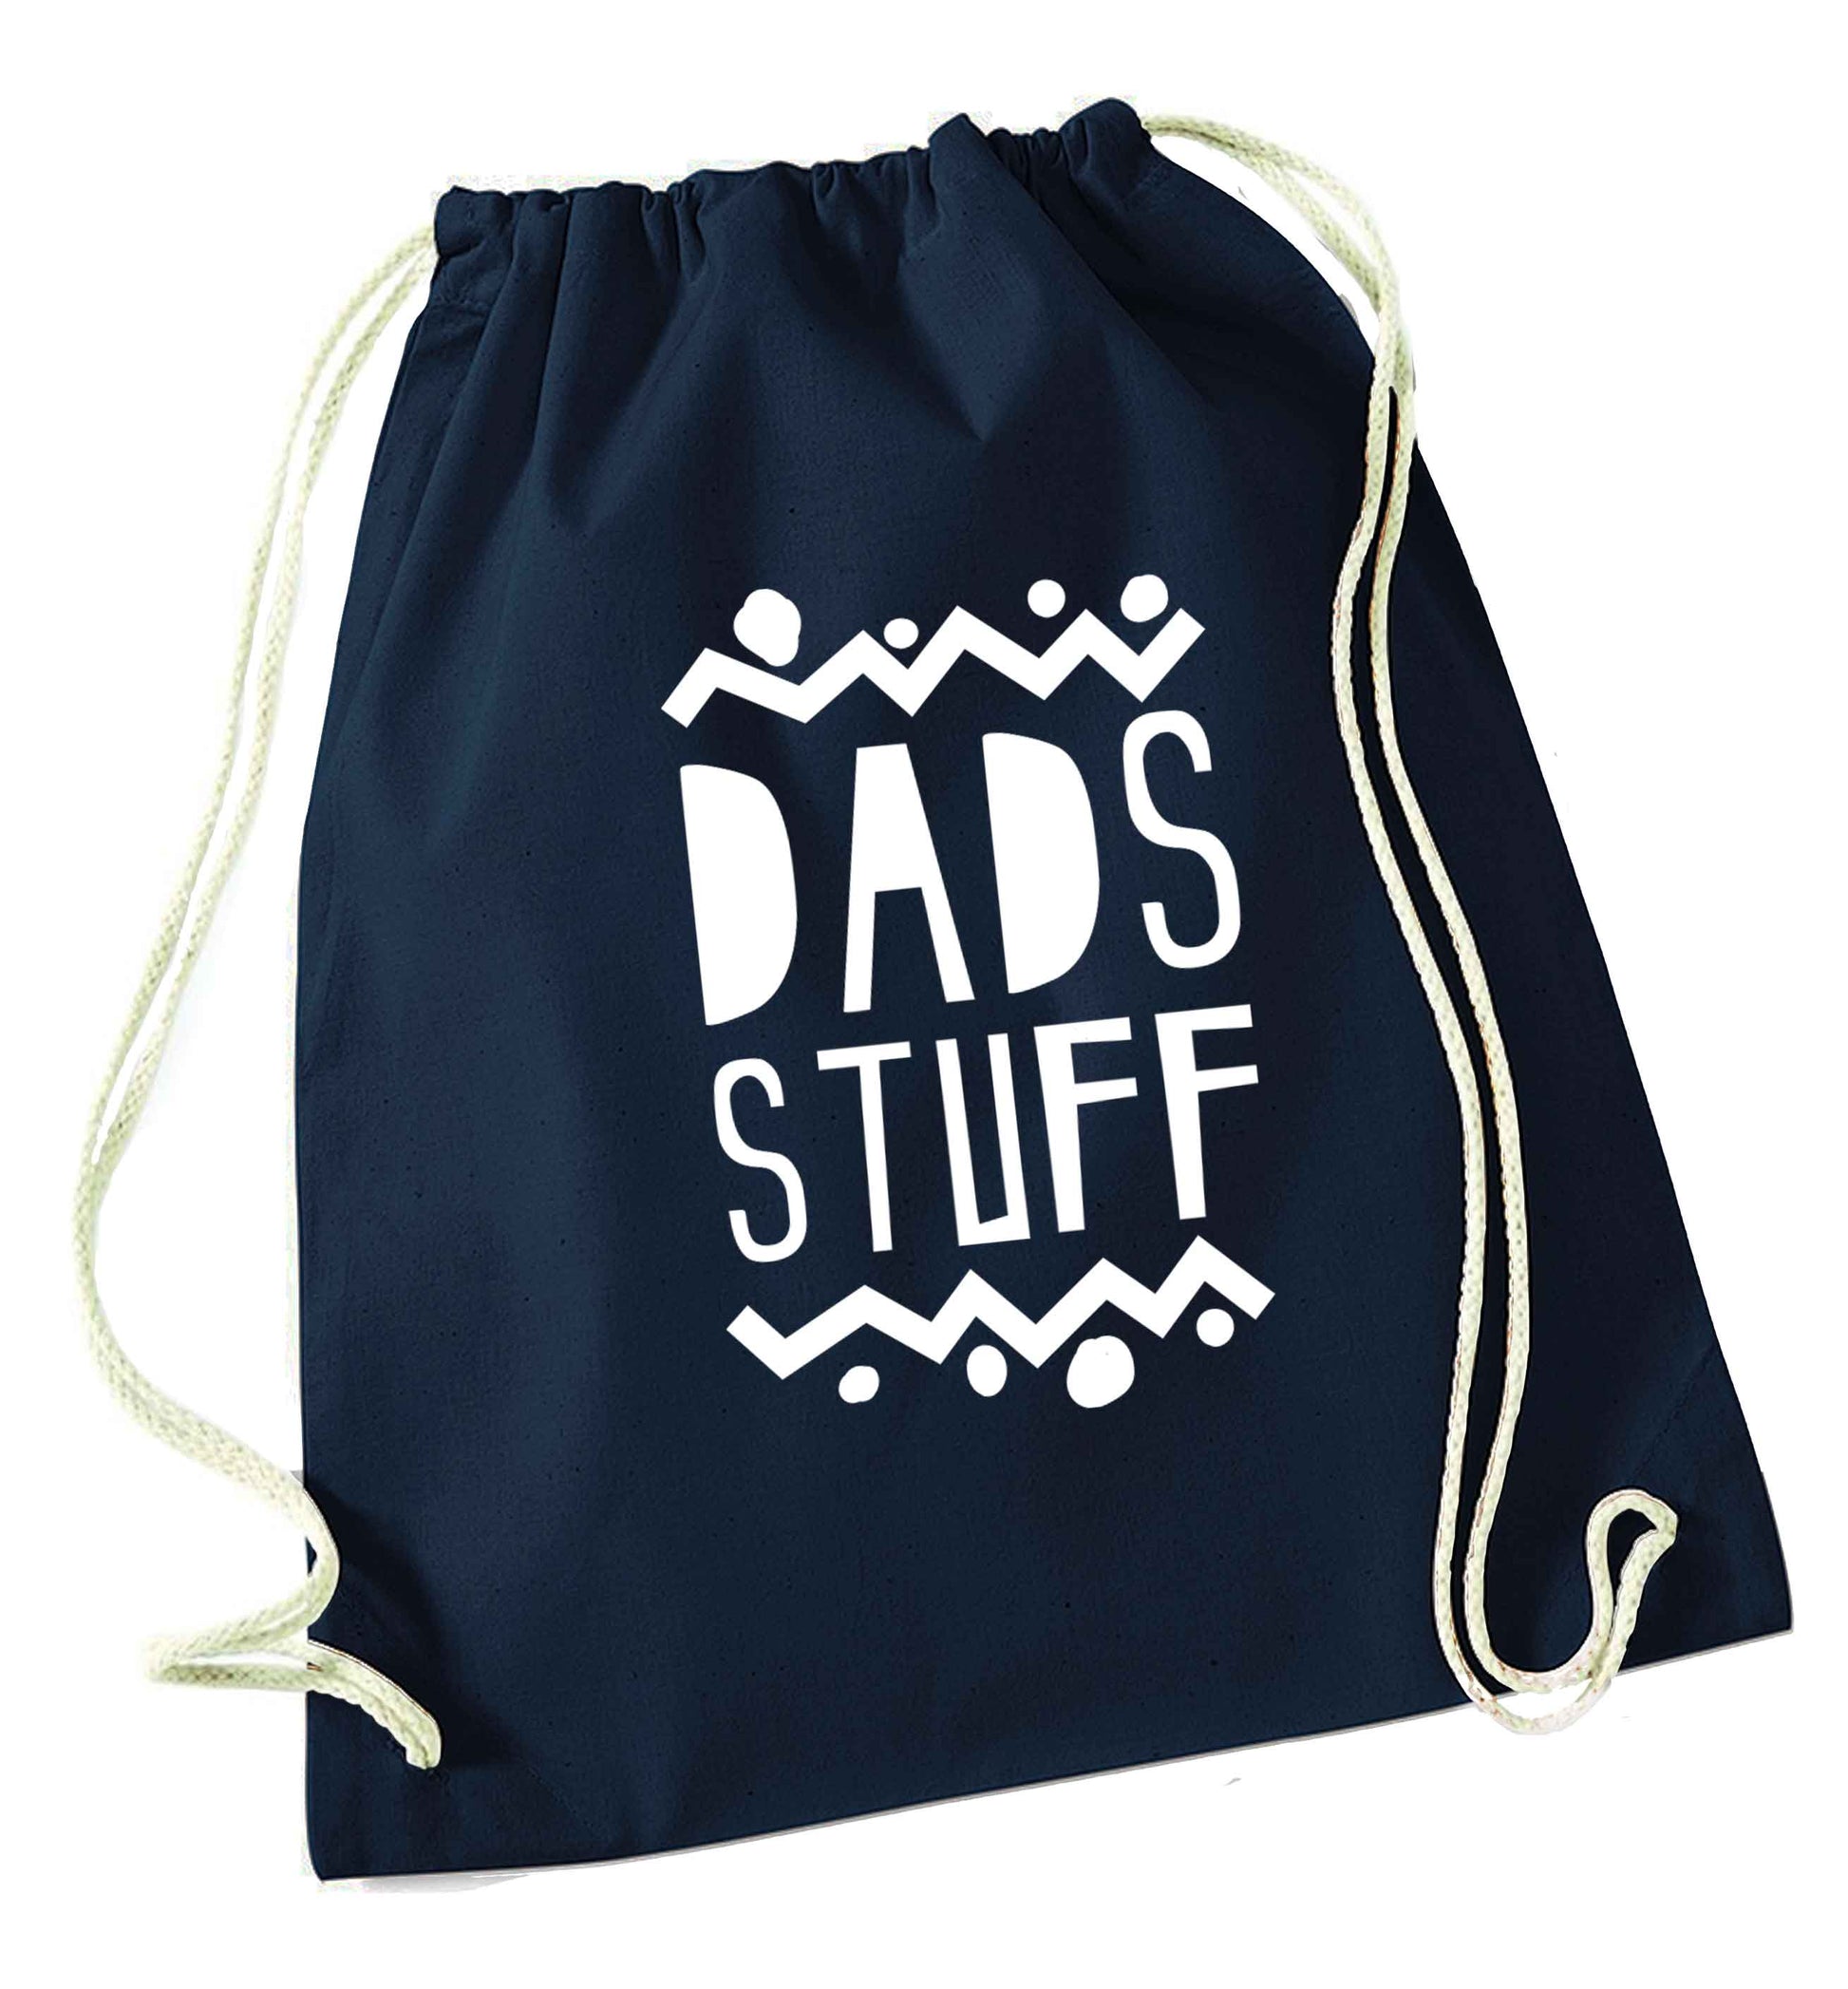 Dads stuff navy drawstring bag